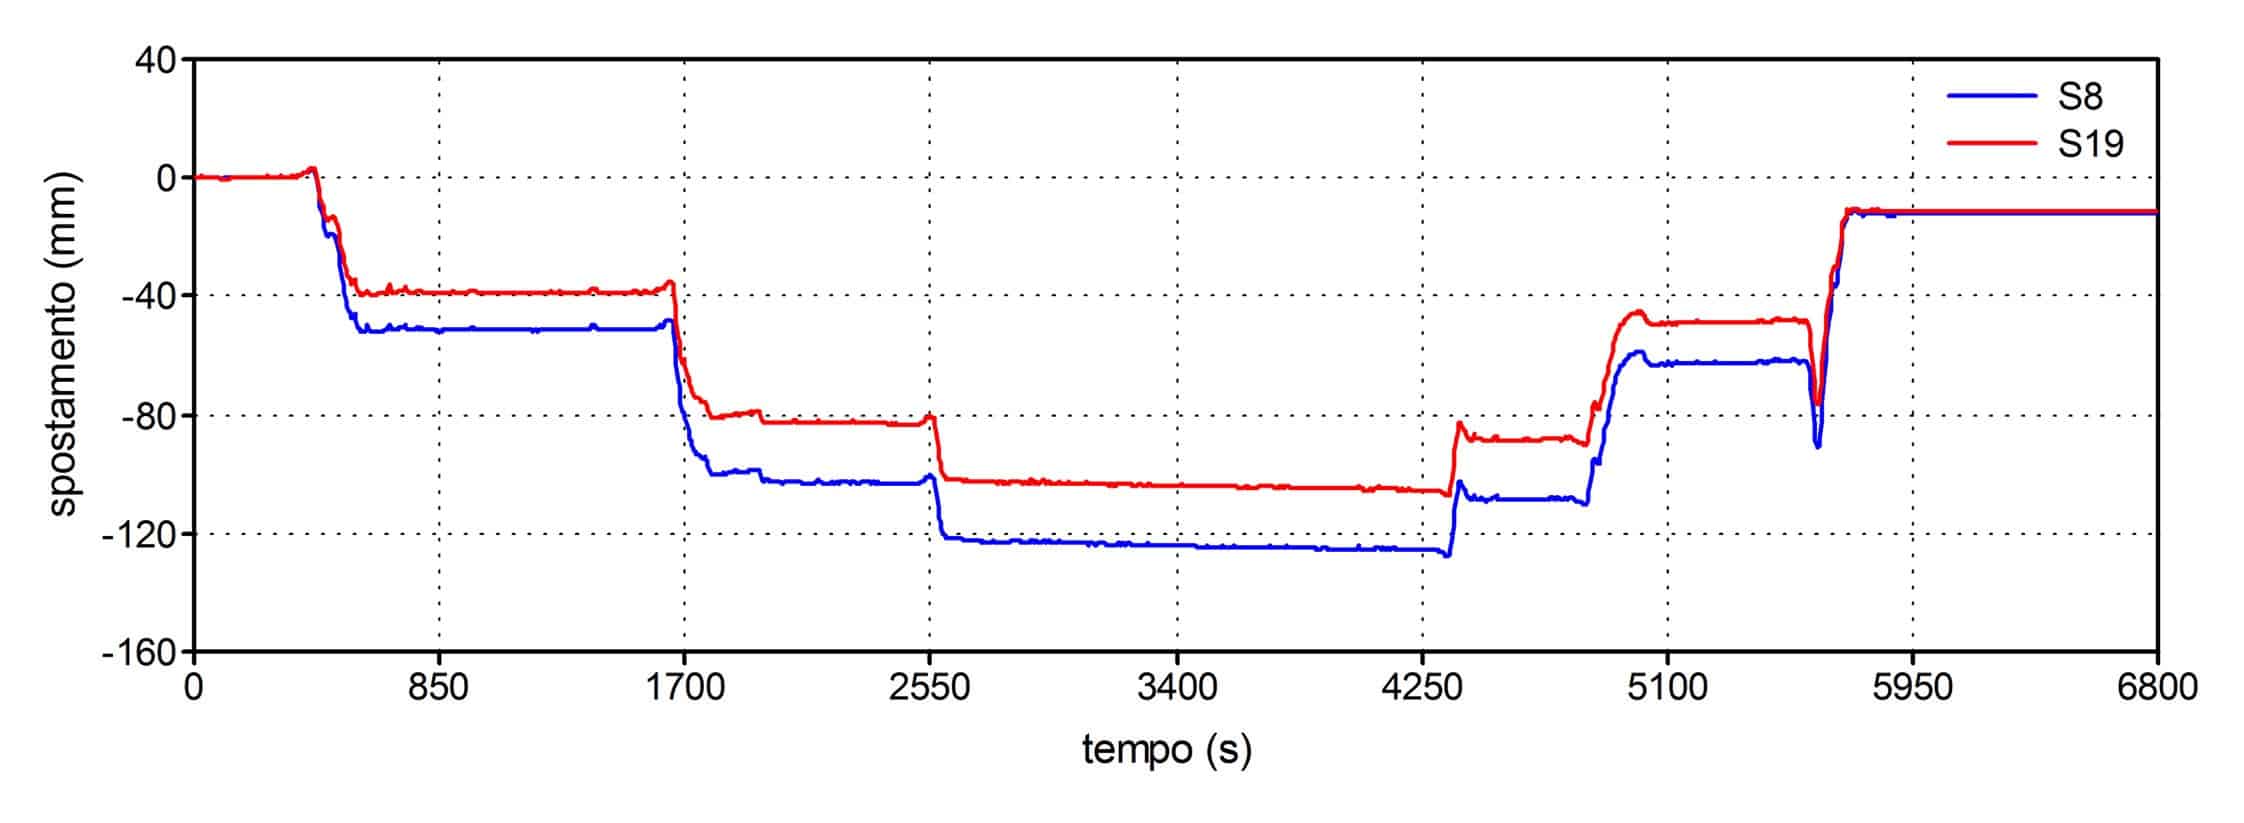 L’evoluzione nel tempo degli spostamenti misurati in mezzeria della campata PFD-P18 durante le prove dirette di carico: la prima condizione di carico